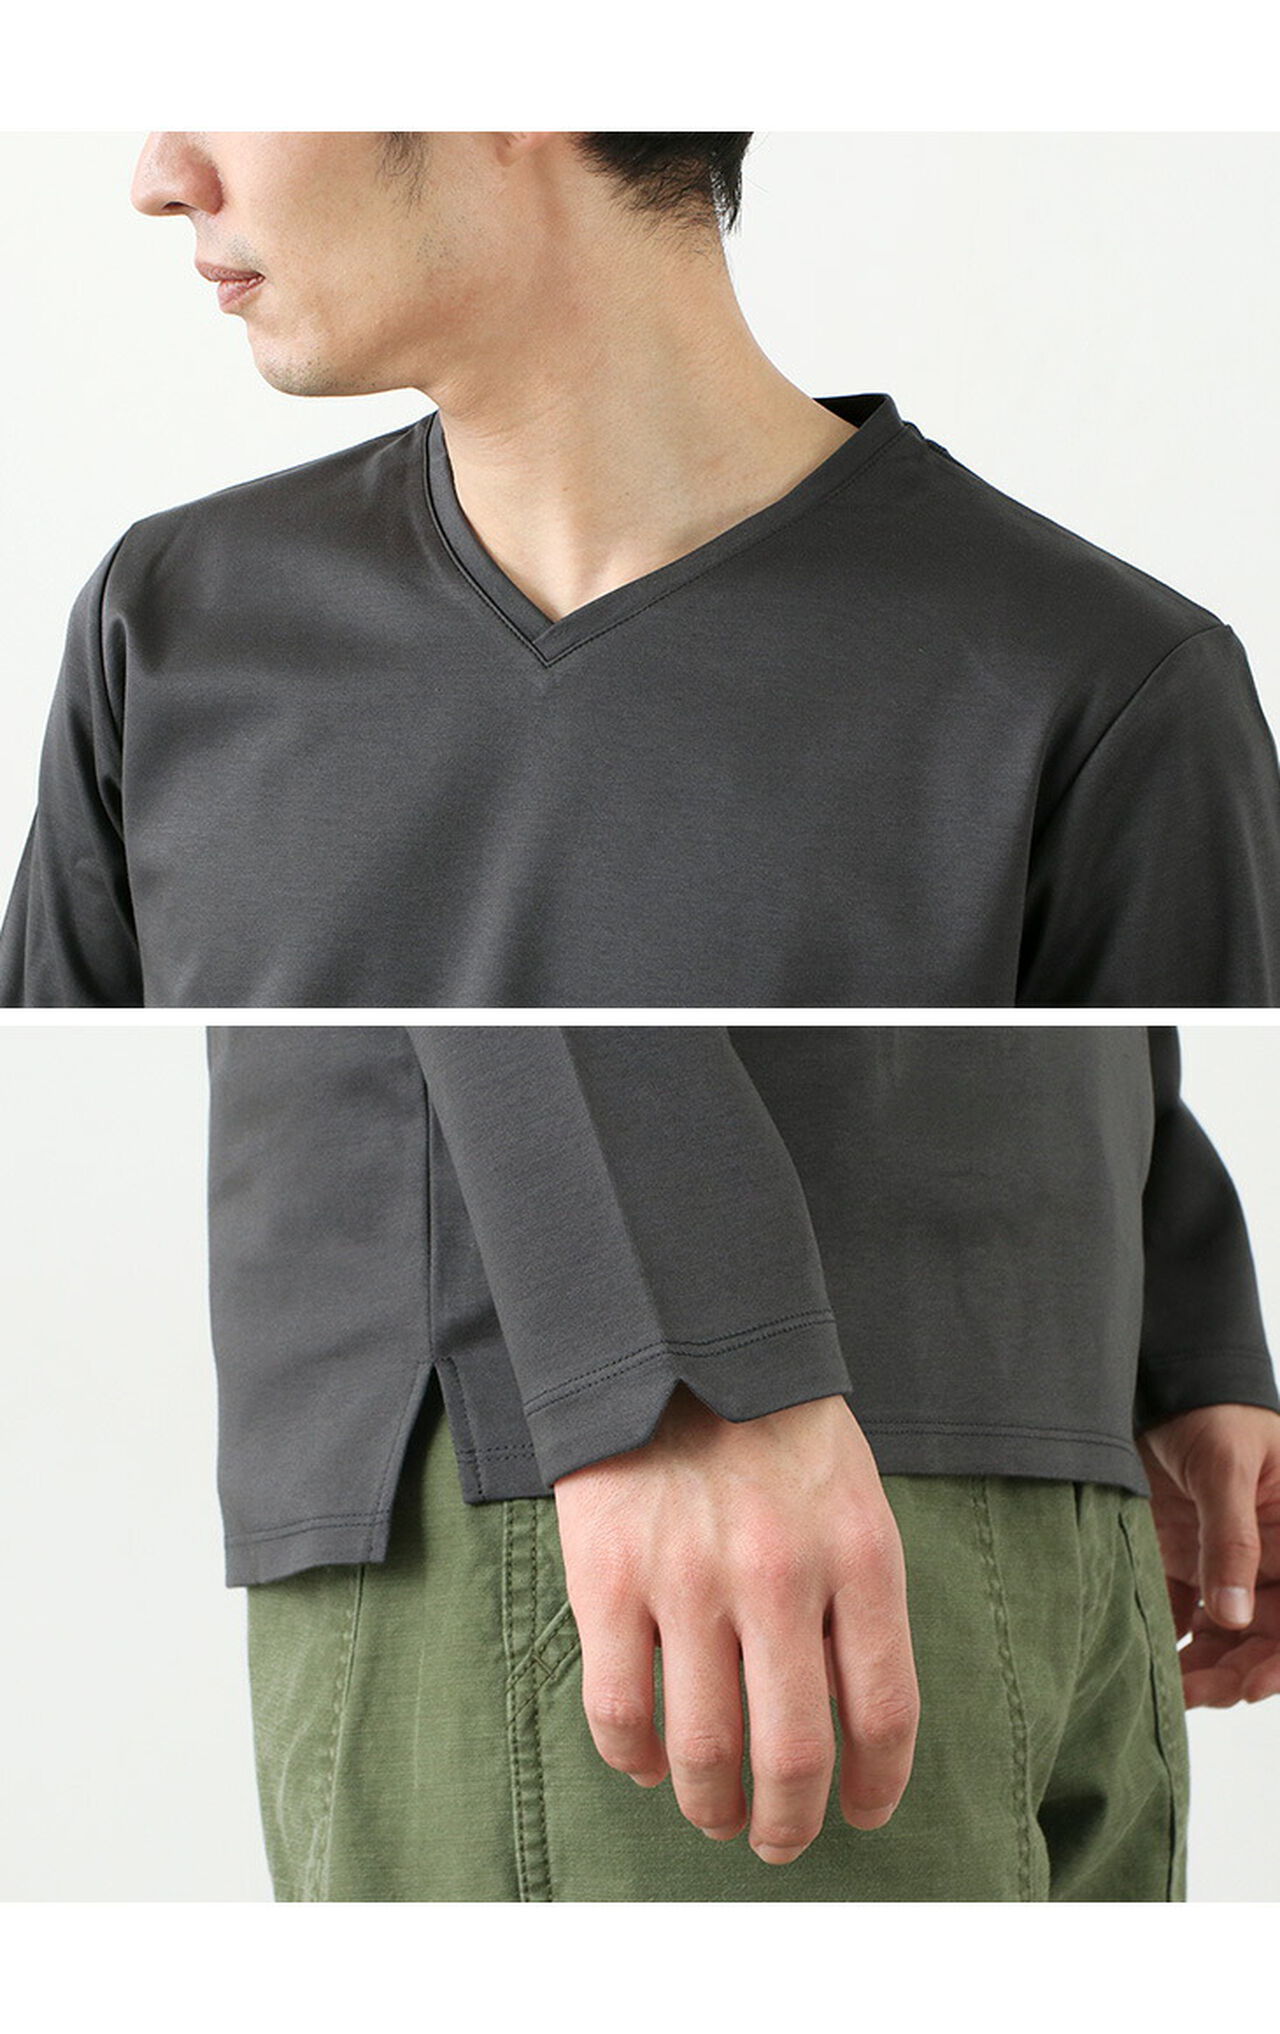 Tokyo Made V-Neck Long Sleeve Dress T-Shirt,, large image number 9